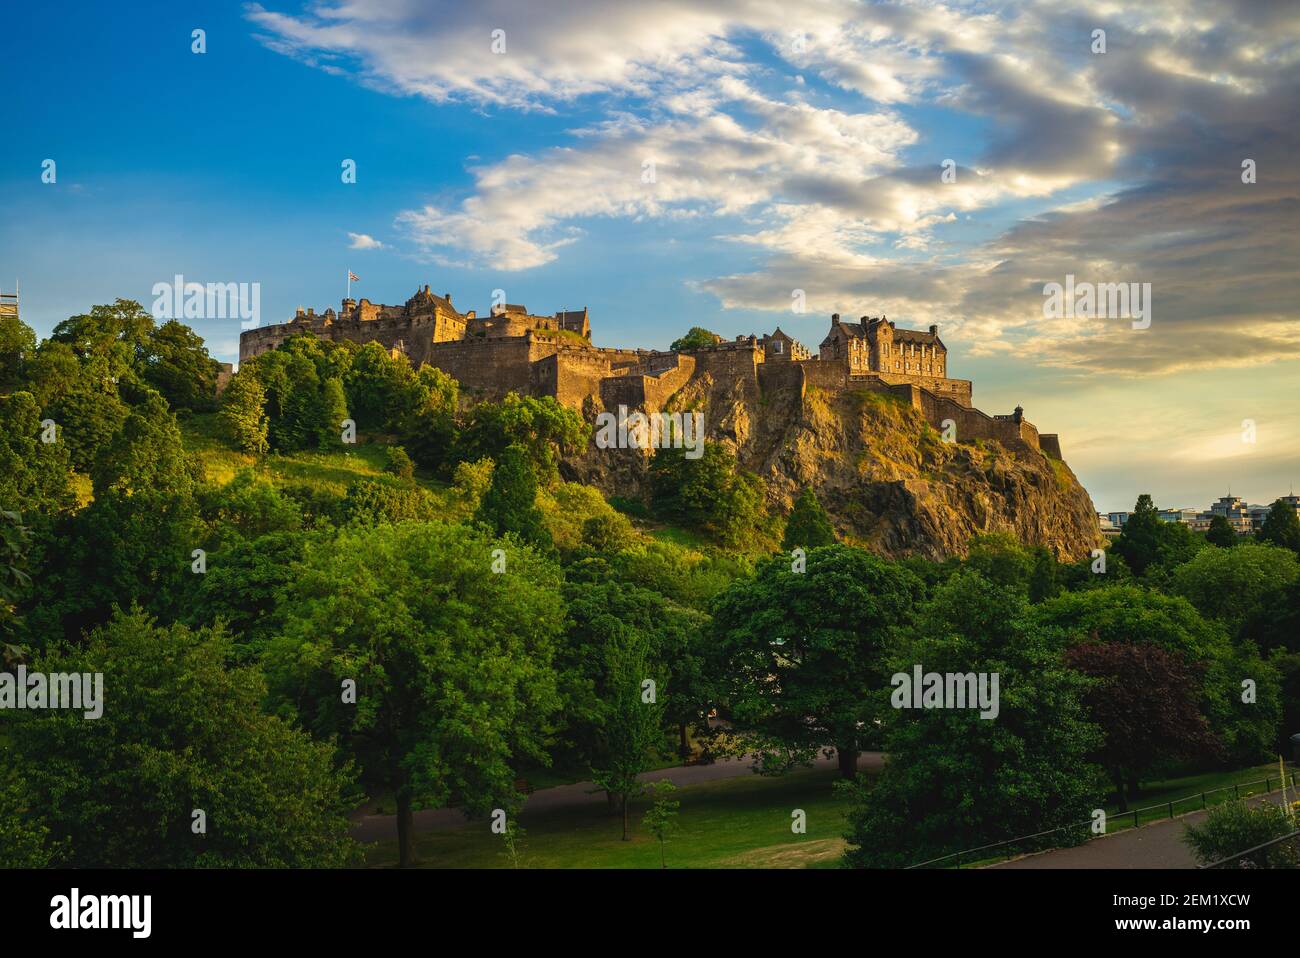 Castillo de Edimburgo y parque de los príncipes en edimburgo, escocia, reino unido Foto de stock